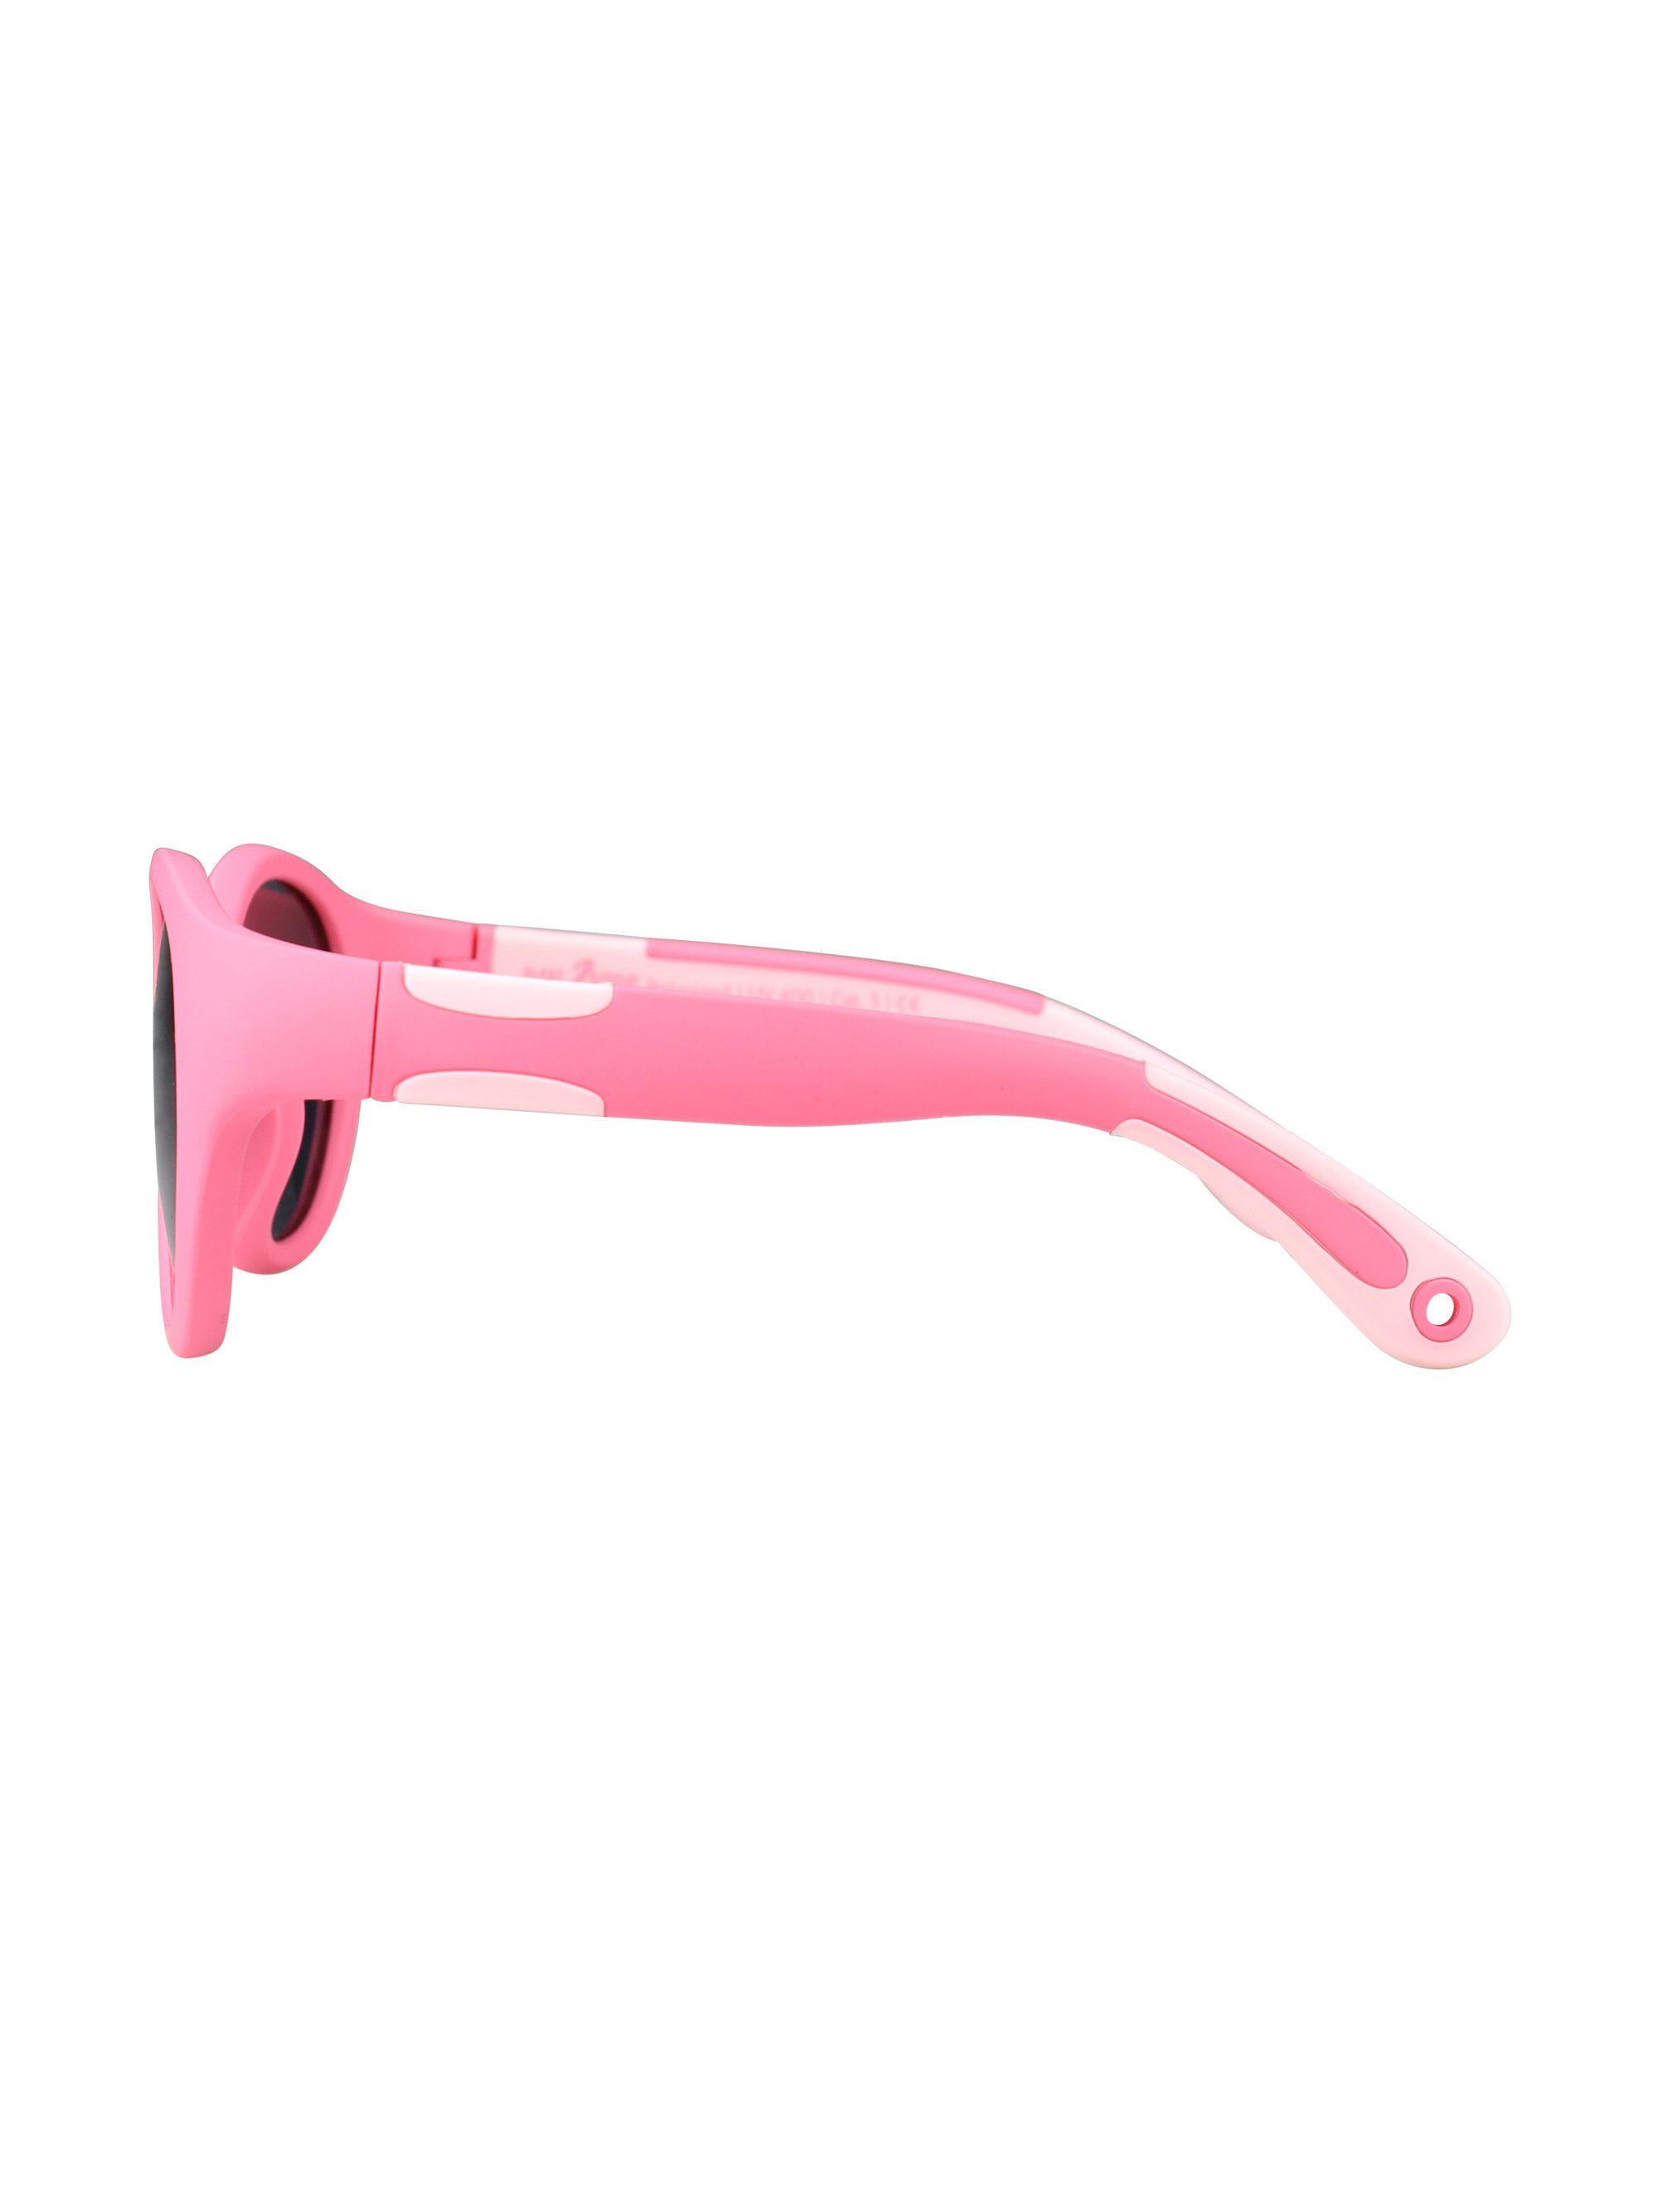 ActiveSol SUNGLASSES Sonnenbrille Pink - polarisiert Kinder Jahre, Pacific Panto Pan2Kids, 2 Design, für – 5